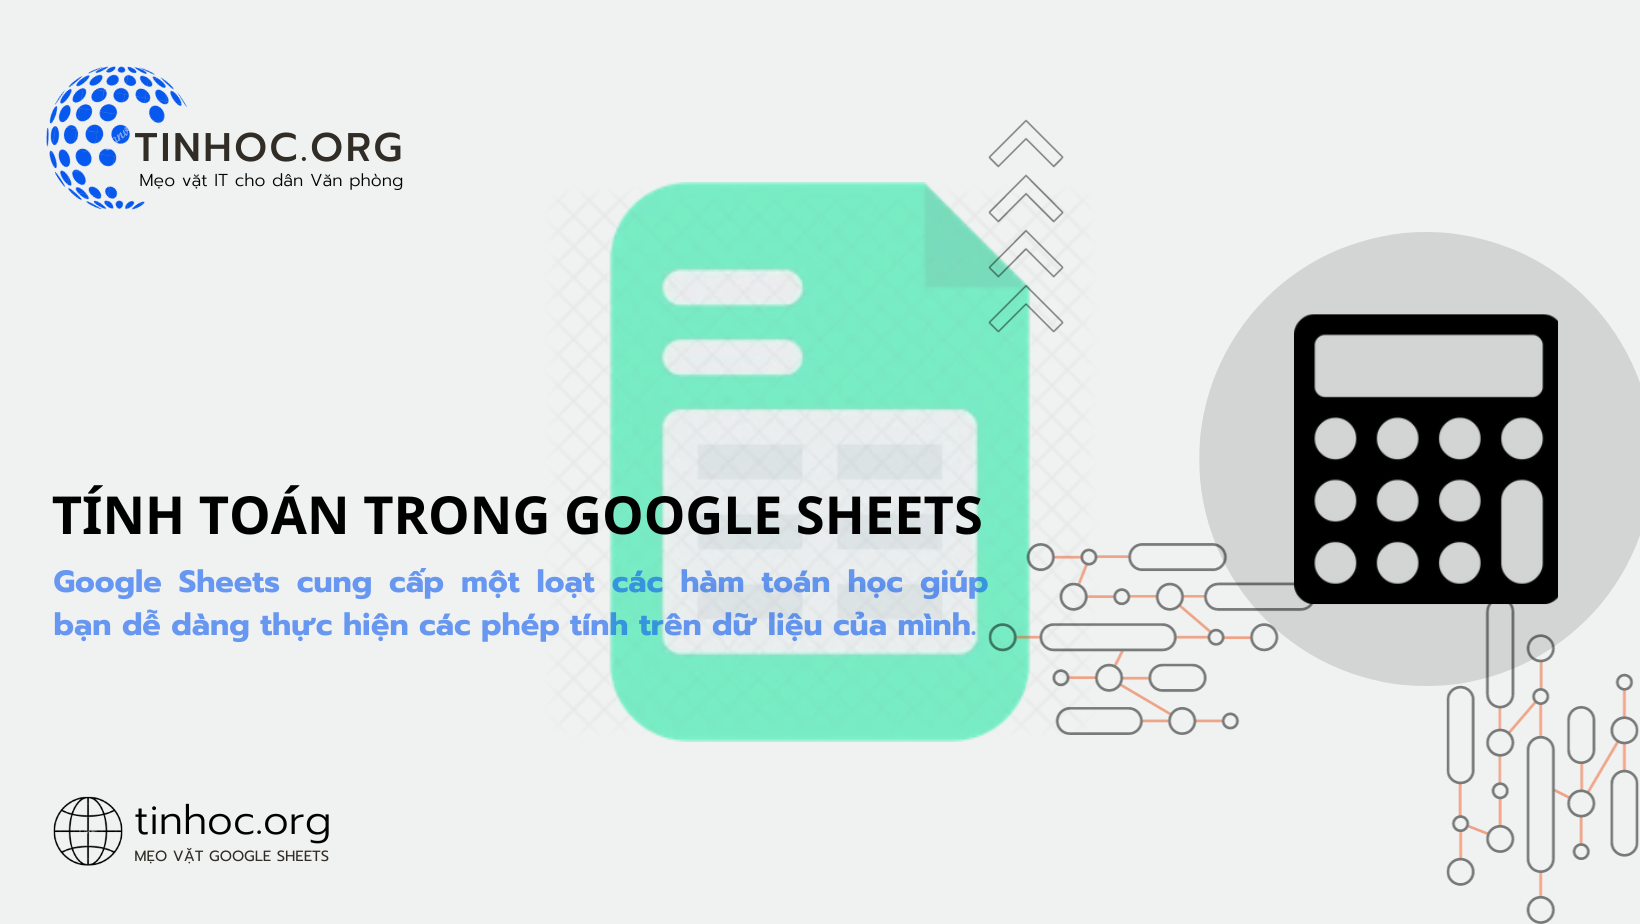 Google Sheets cung cấp một loạt các hàm toán học giúp bạn dễ dàng thực hiện các phép tính trên dữ liệu của mình.